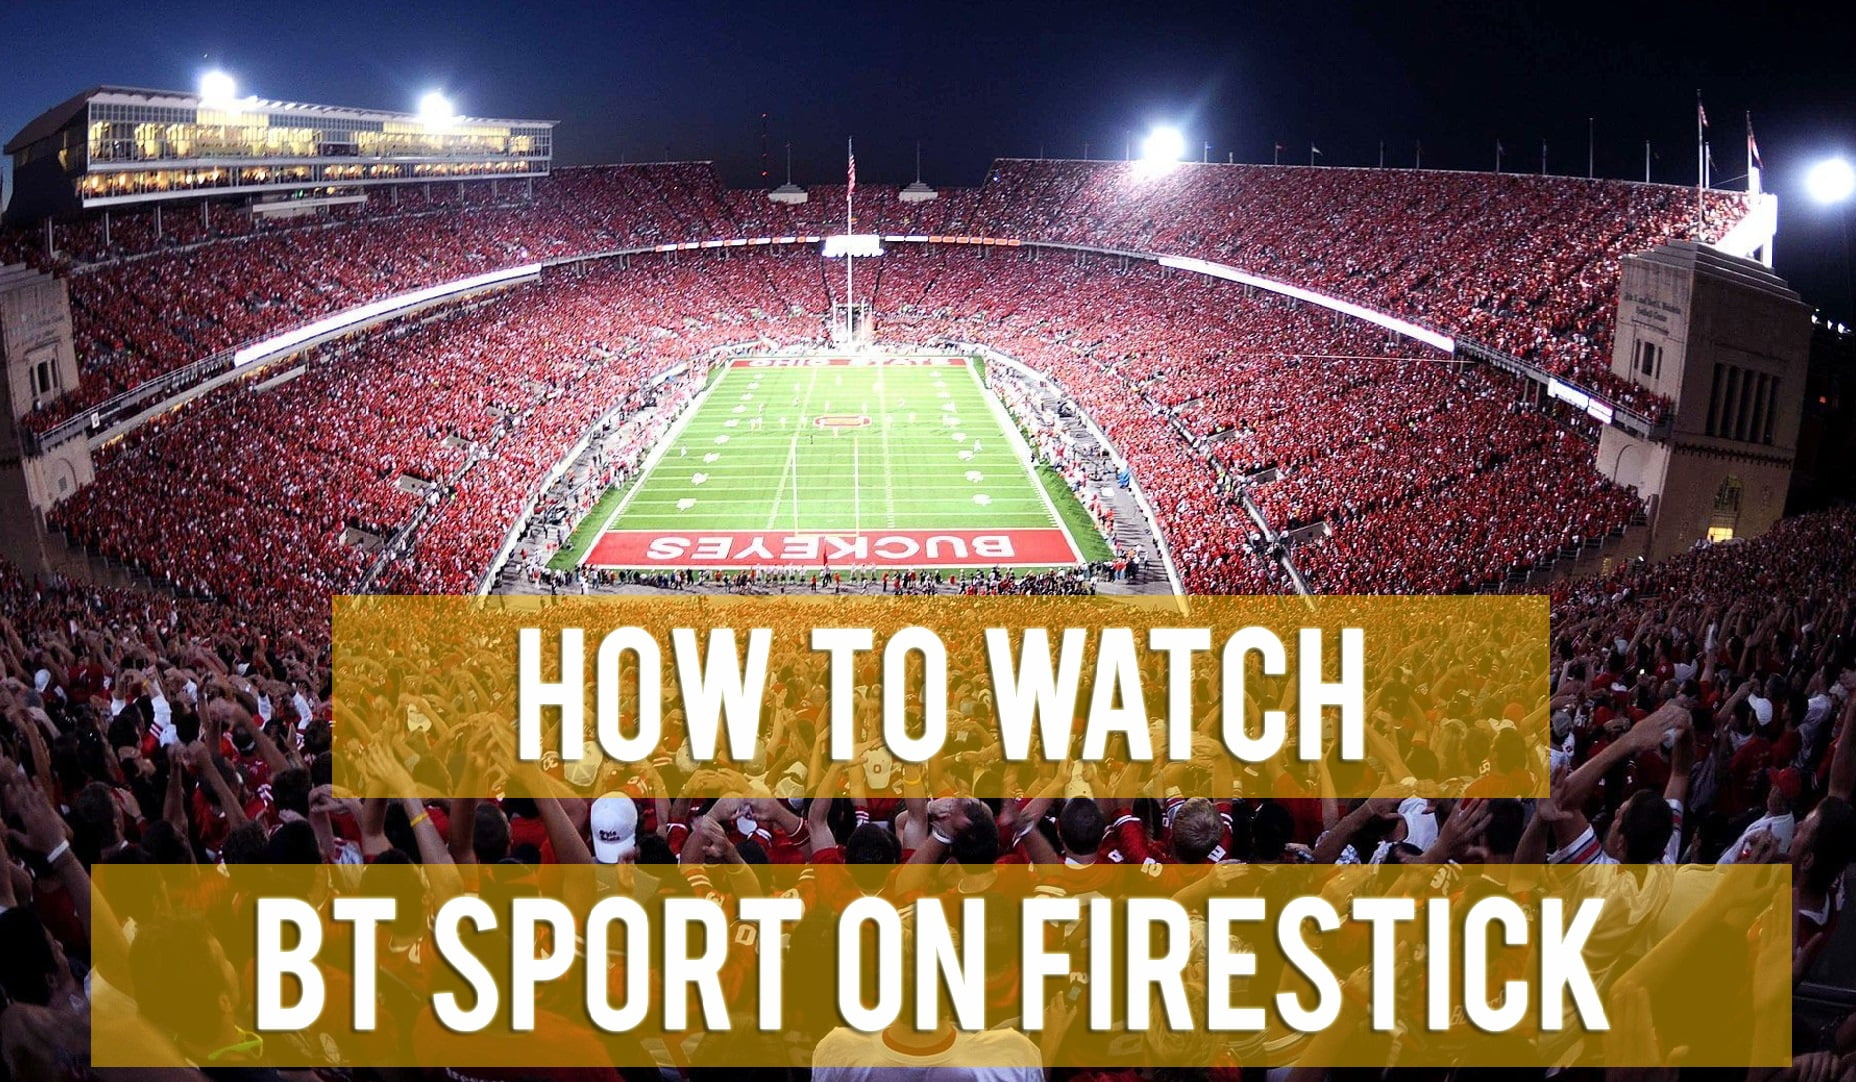 How to Watch BT Sport on Firestick